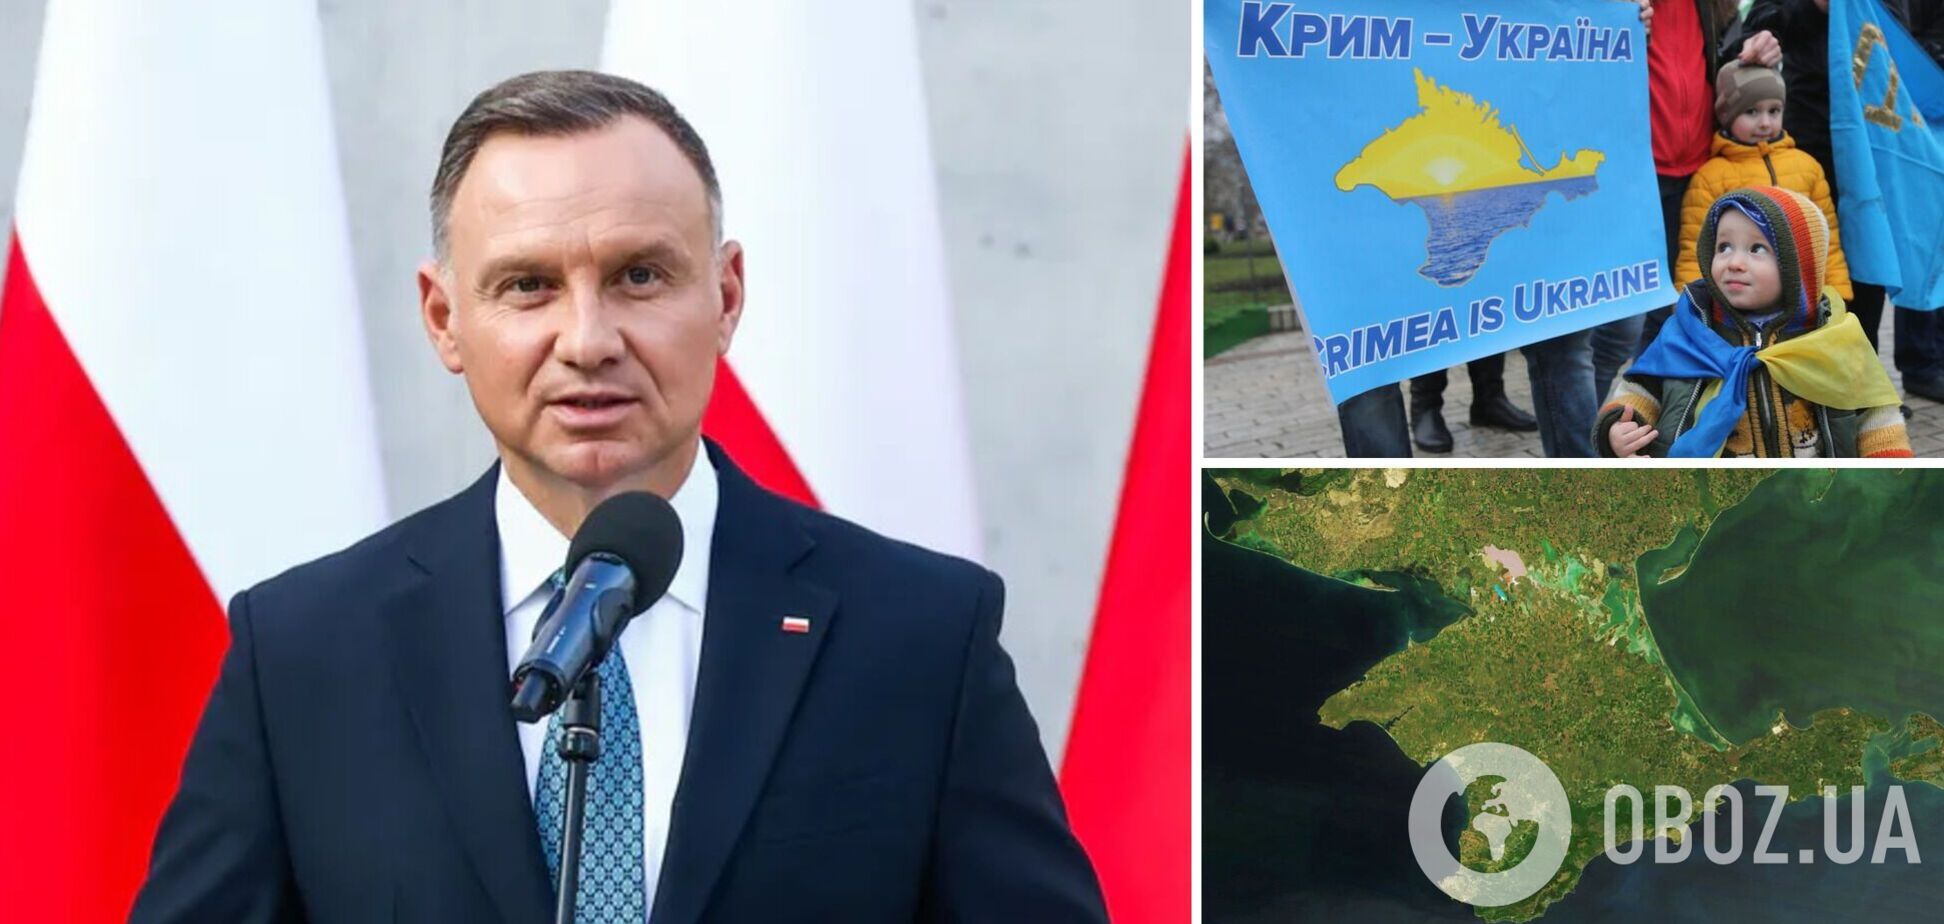 'Оккупация Украины – это преступление': Дуда уточнил свою позицию относительно Крыма